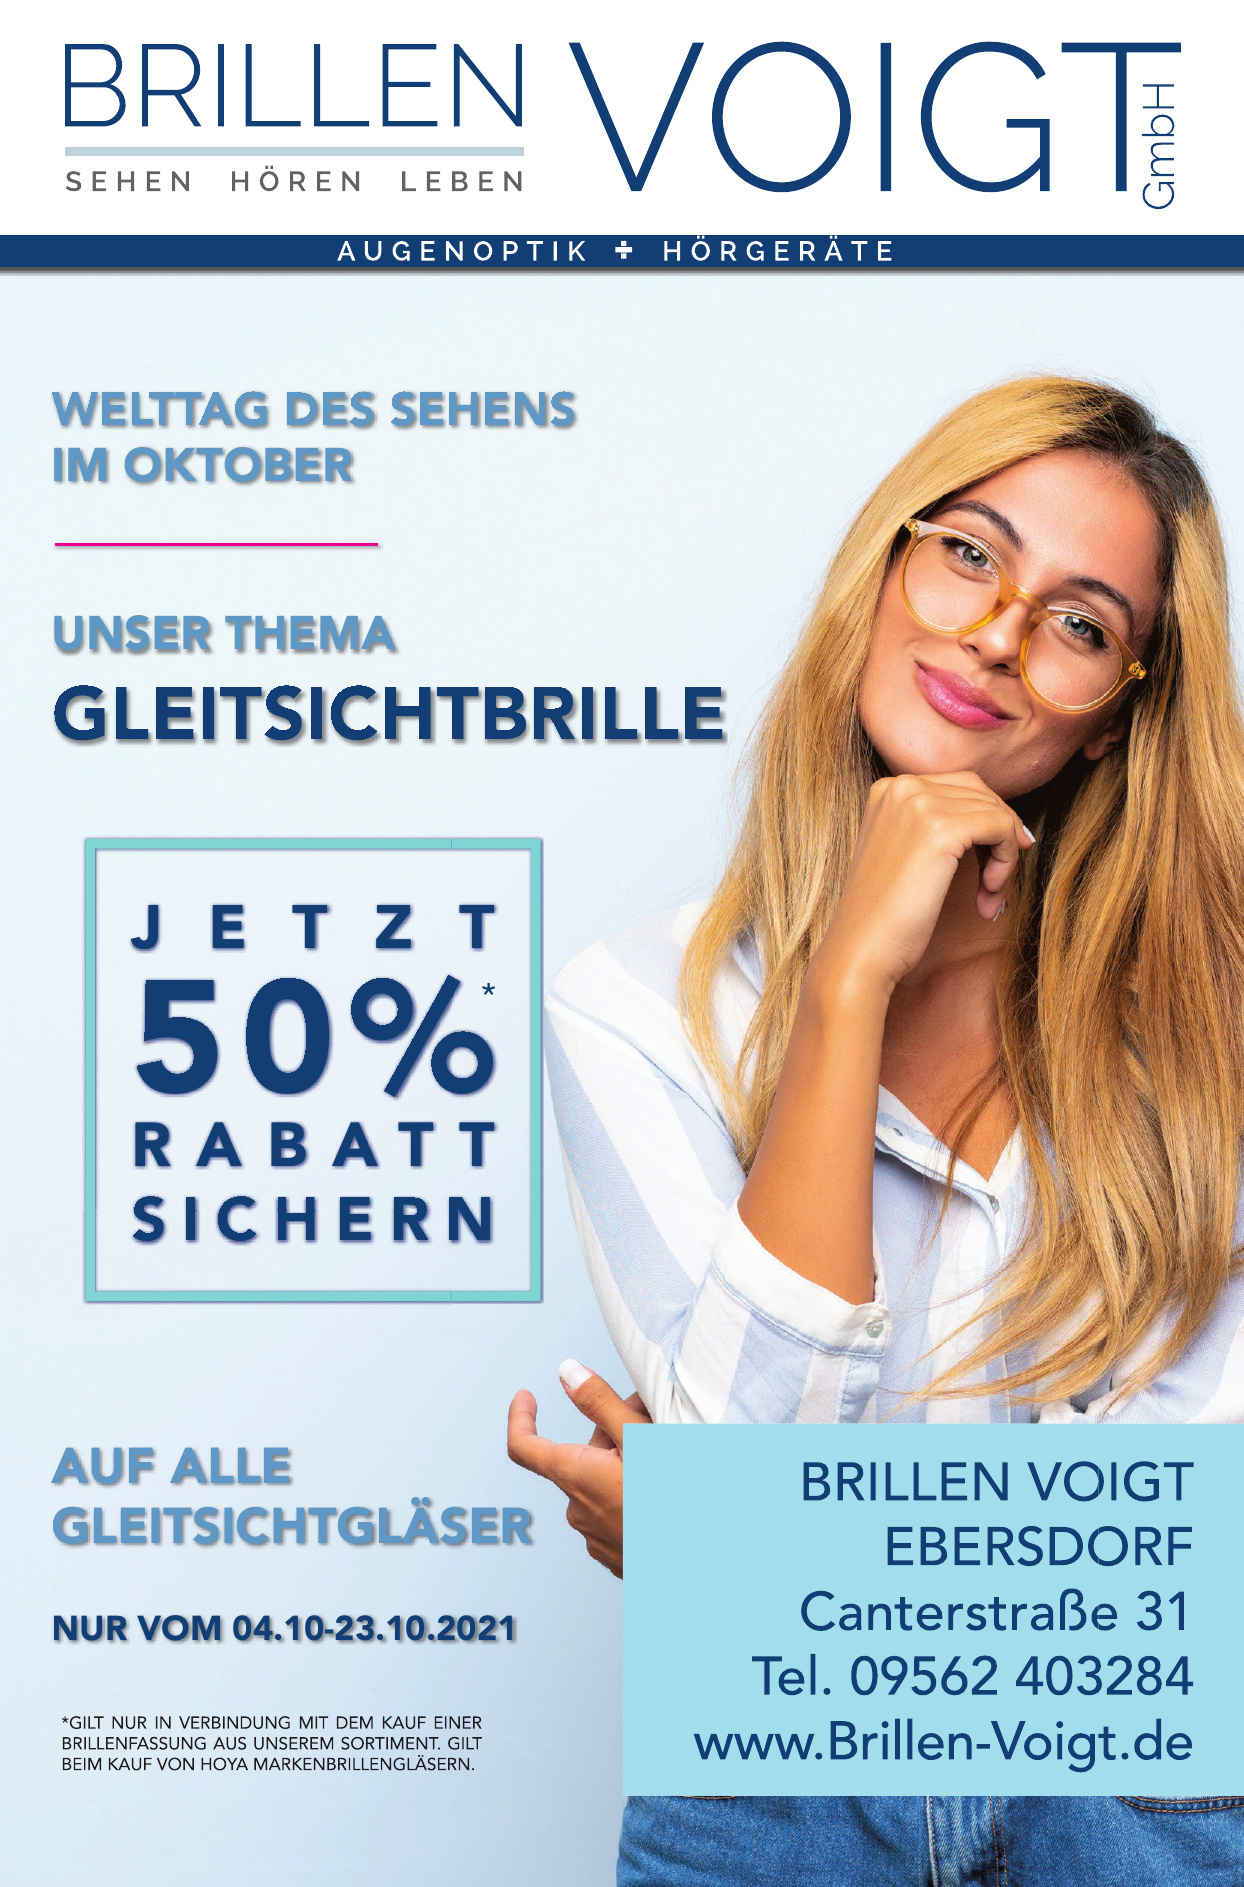 Brillen Voigt GmbH